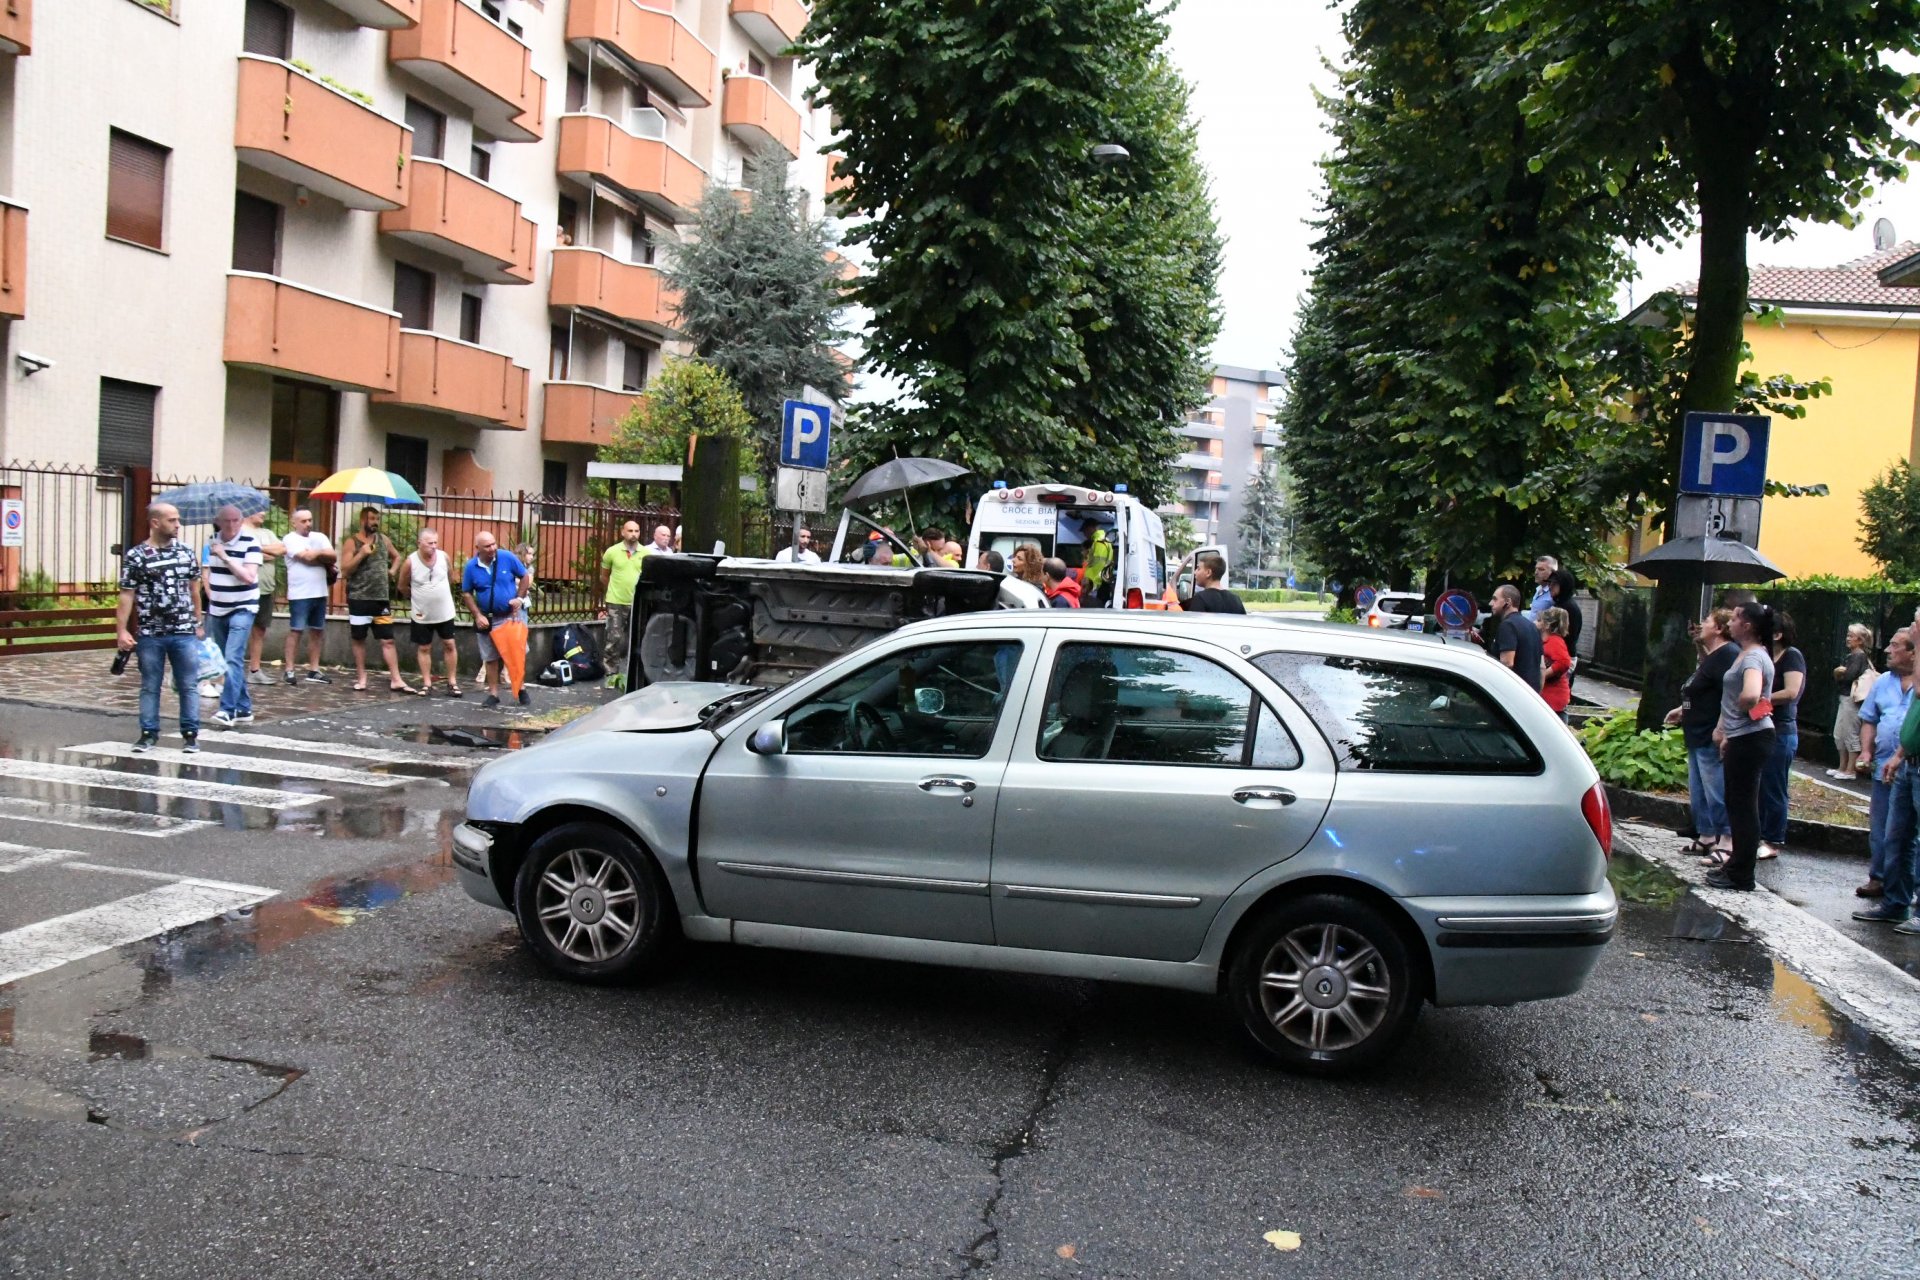 Brugherio spaventoso incidente in via Mazzini auto ribaltata anziani estratti dai vigili del fuoco